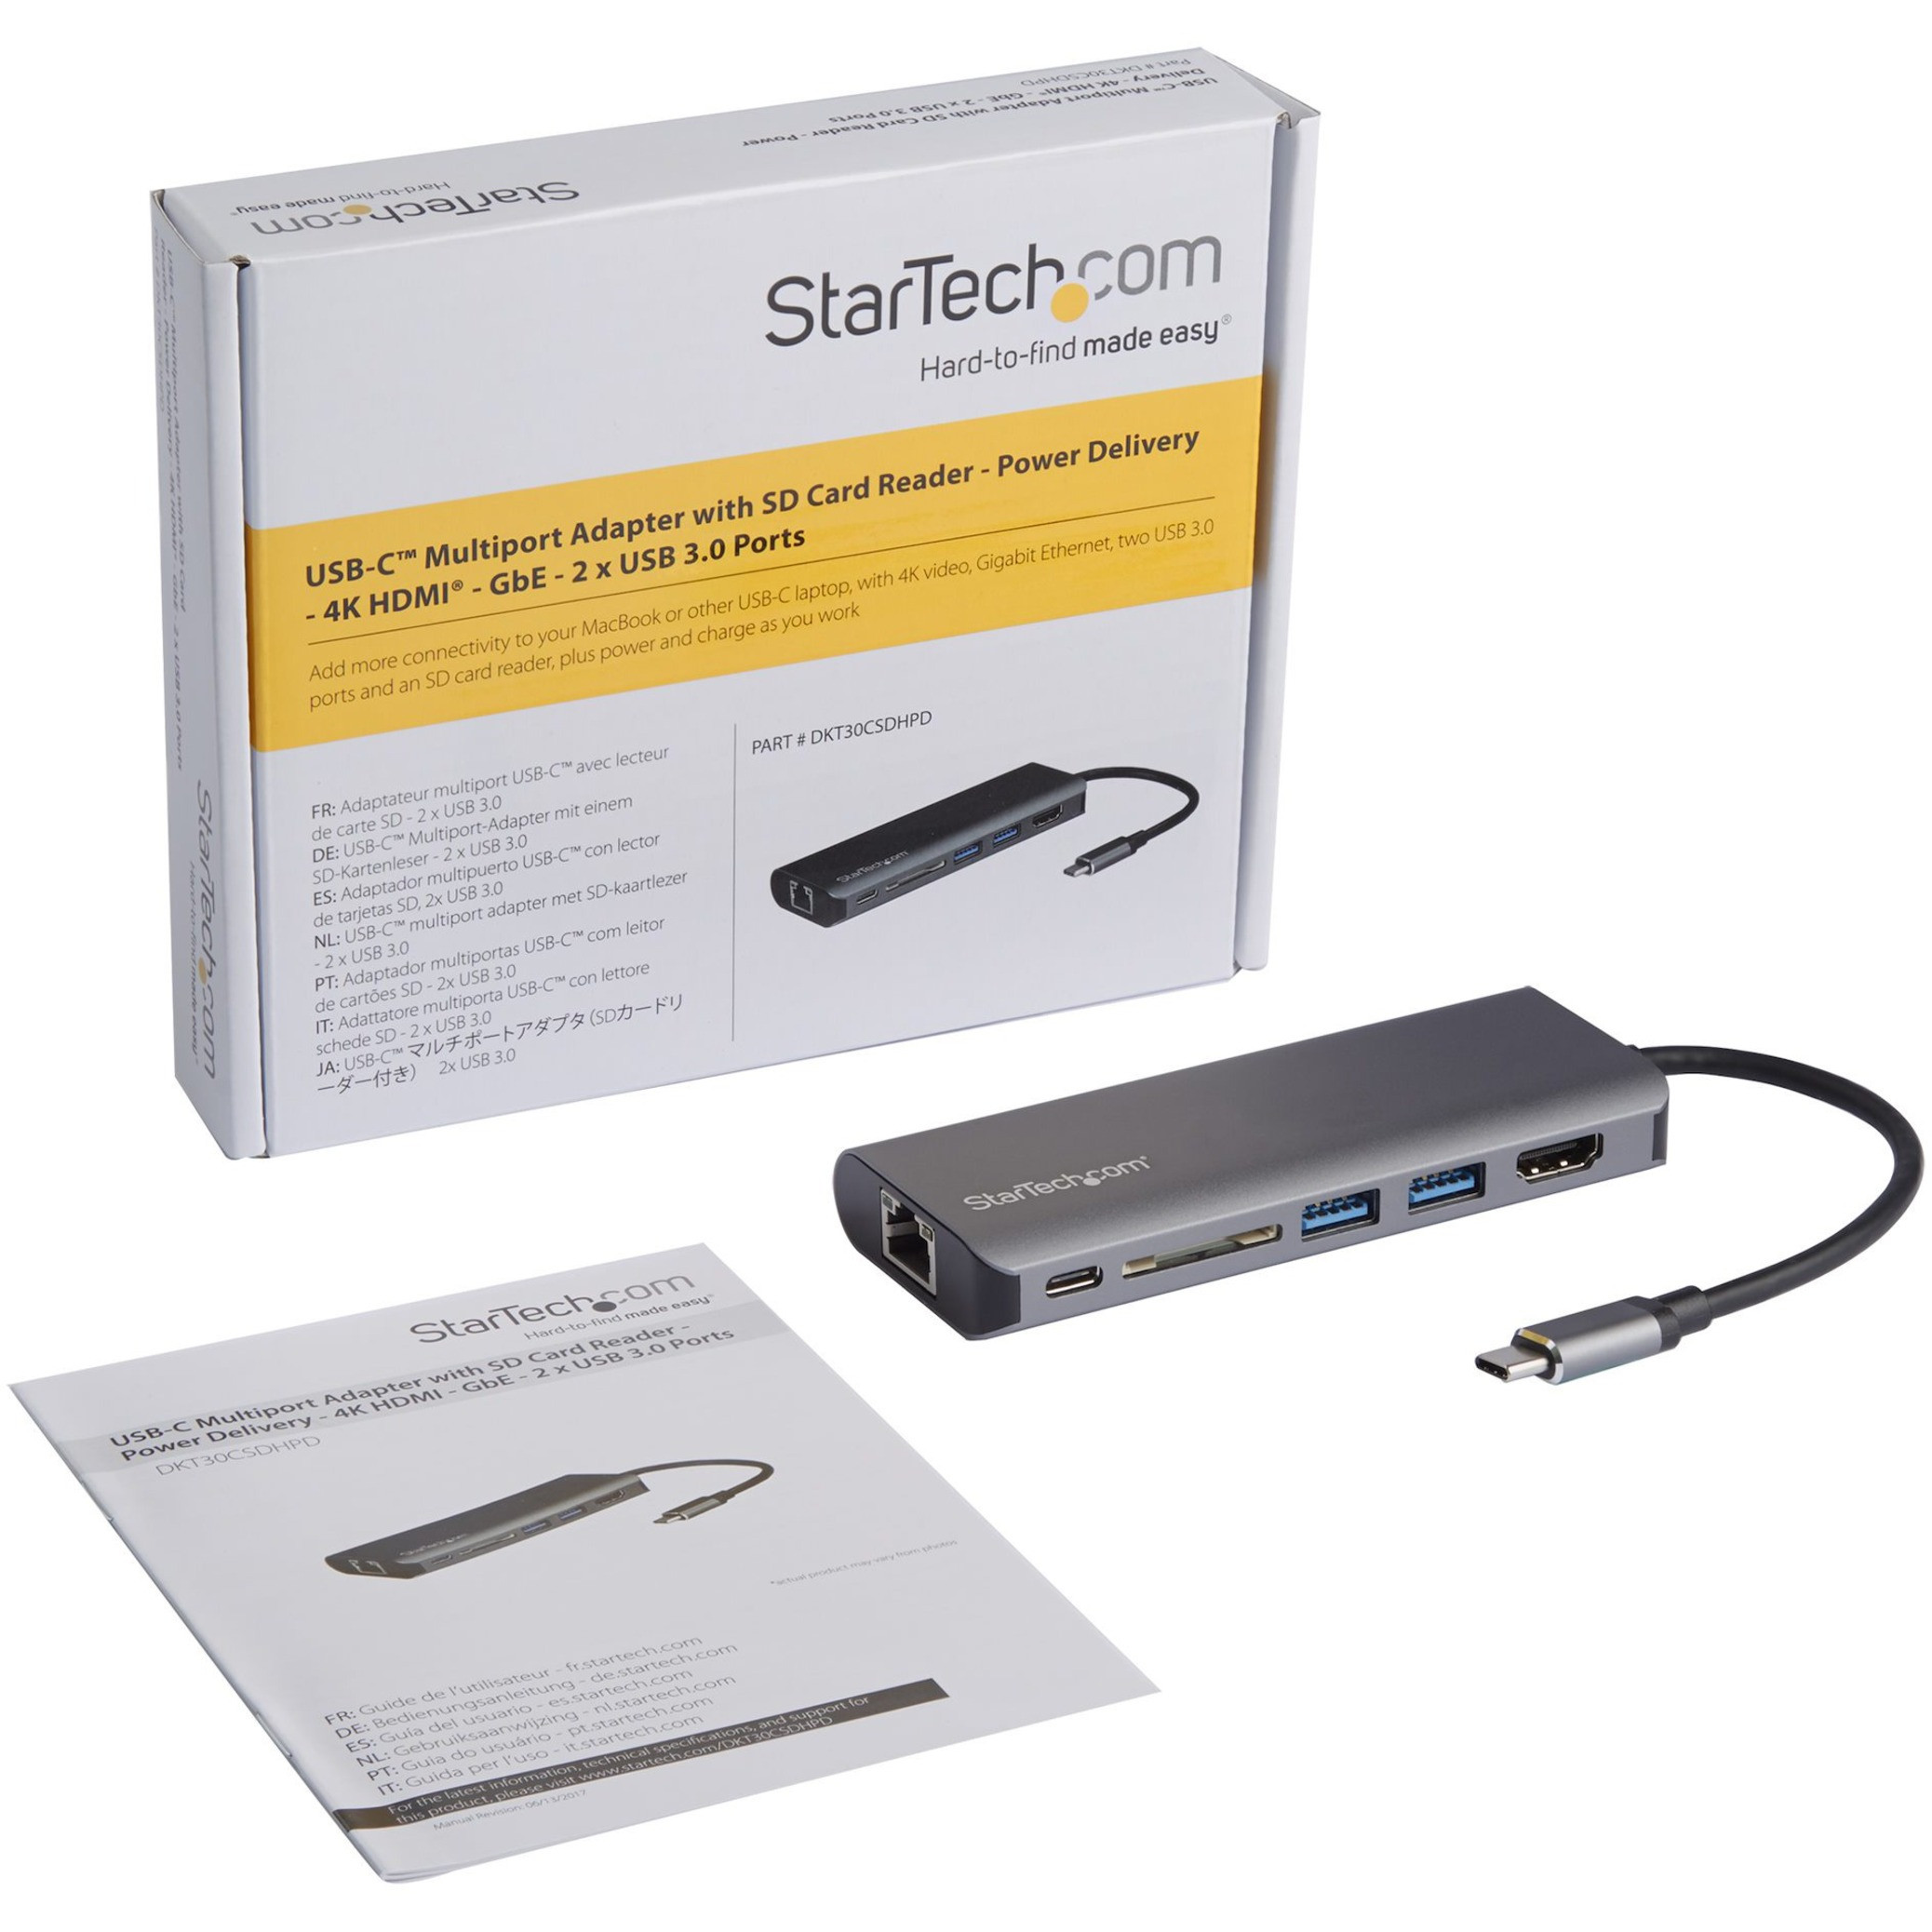 StarTech.com 3 Port USB-C Hub with Gigabit Ethernet & 60W Power